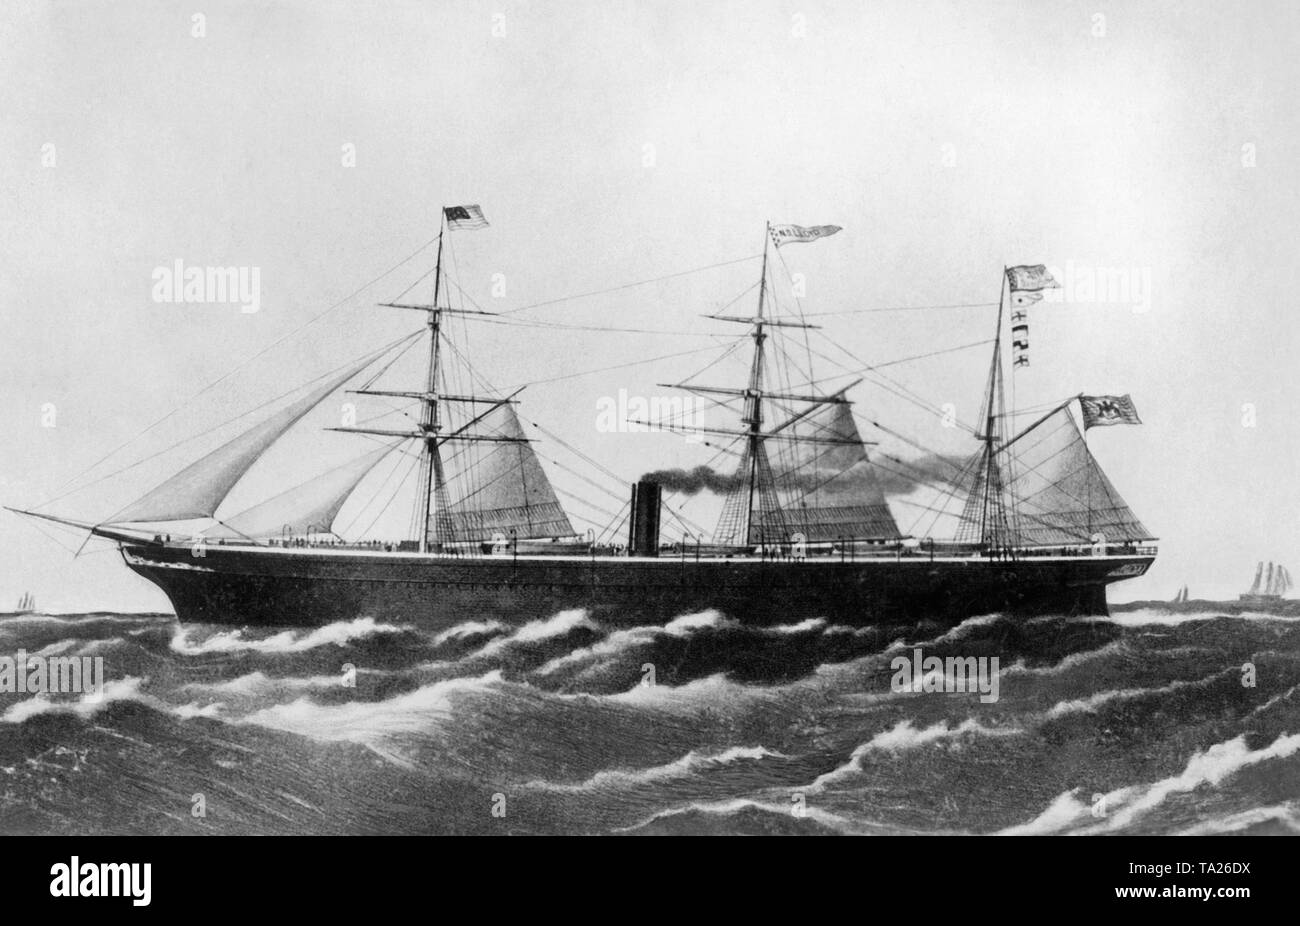 Nel 1858 il sistema di cottura a vapore a vela "Bremen" è stata la prima nave della Norddeutscher Lloyd, che portava il nome di "Bremen". "Bremen" operava sulla rotta transatlantica tra Brema e New York. Foto Stock